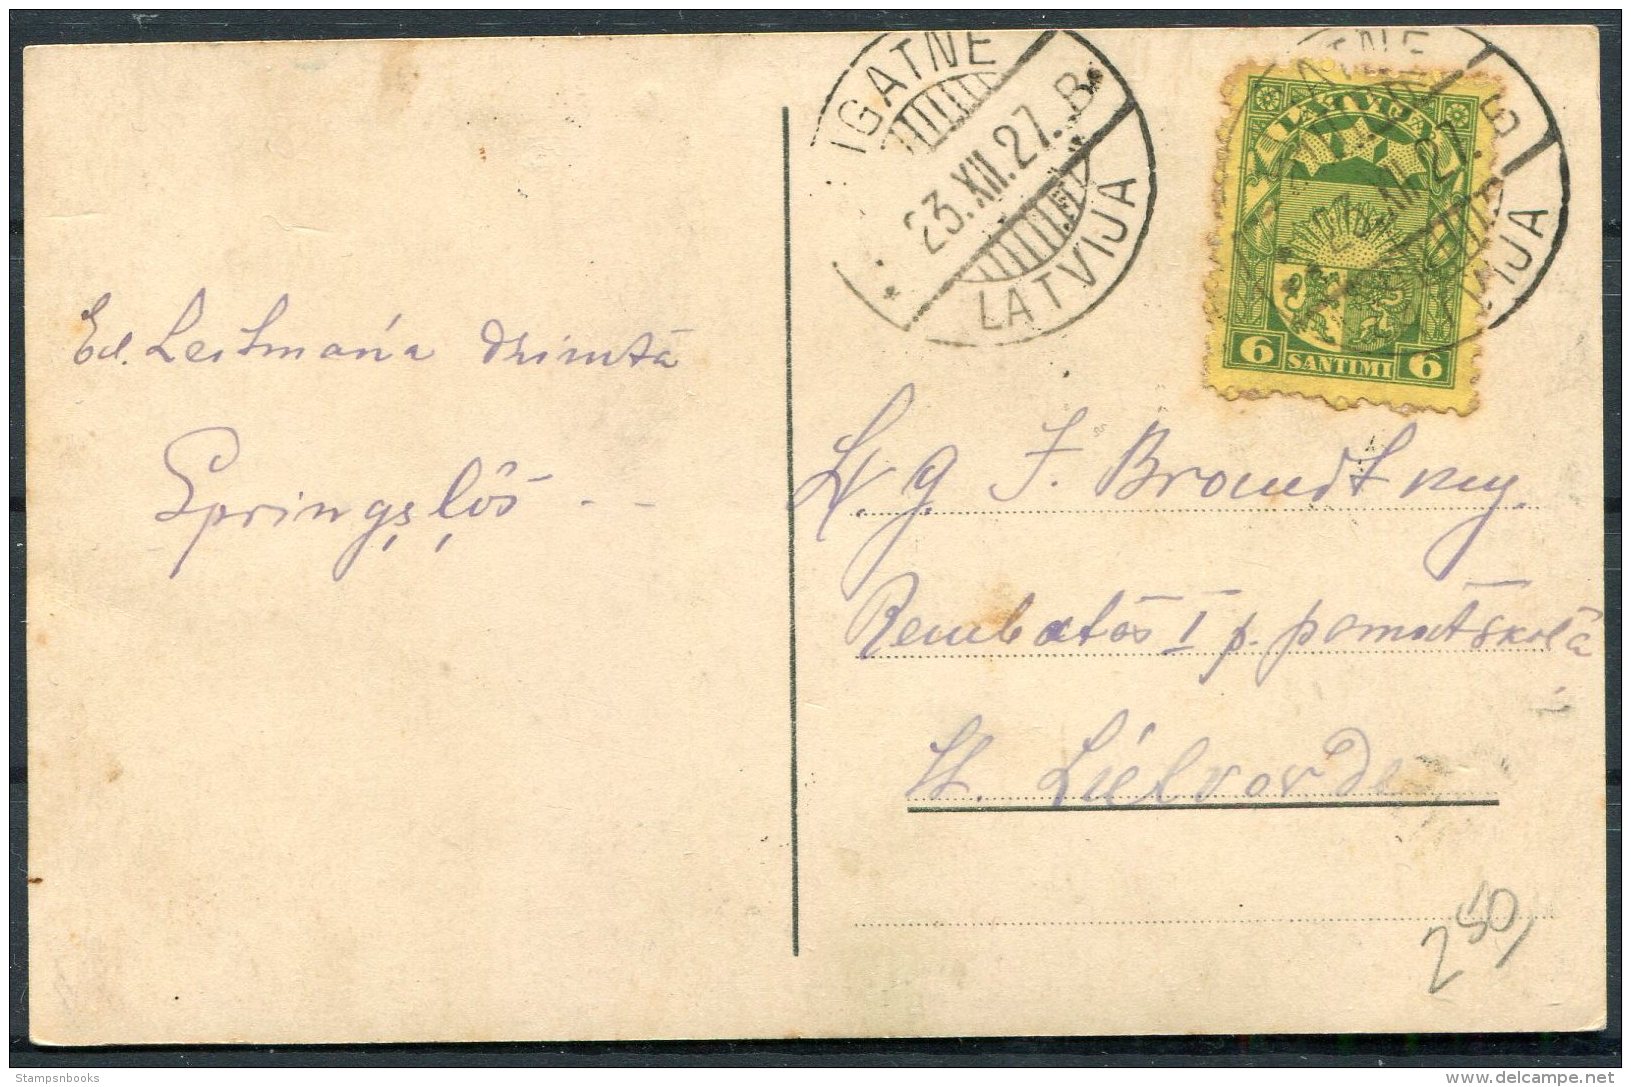 1927 Latvia Patriotic Postcard - Latvia